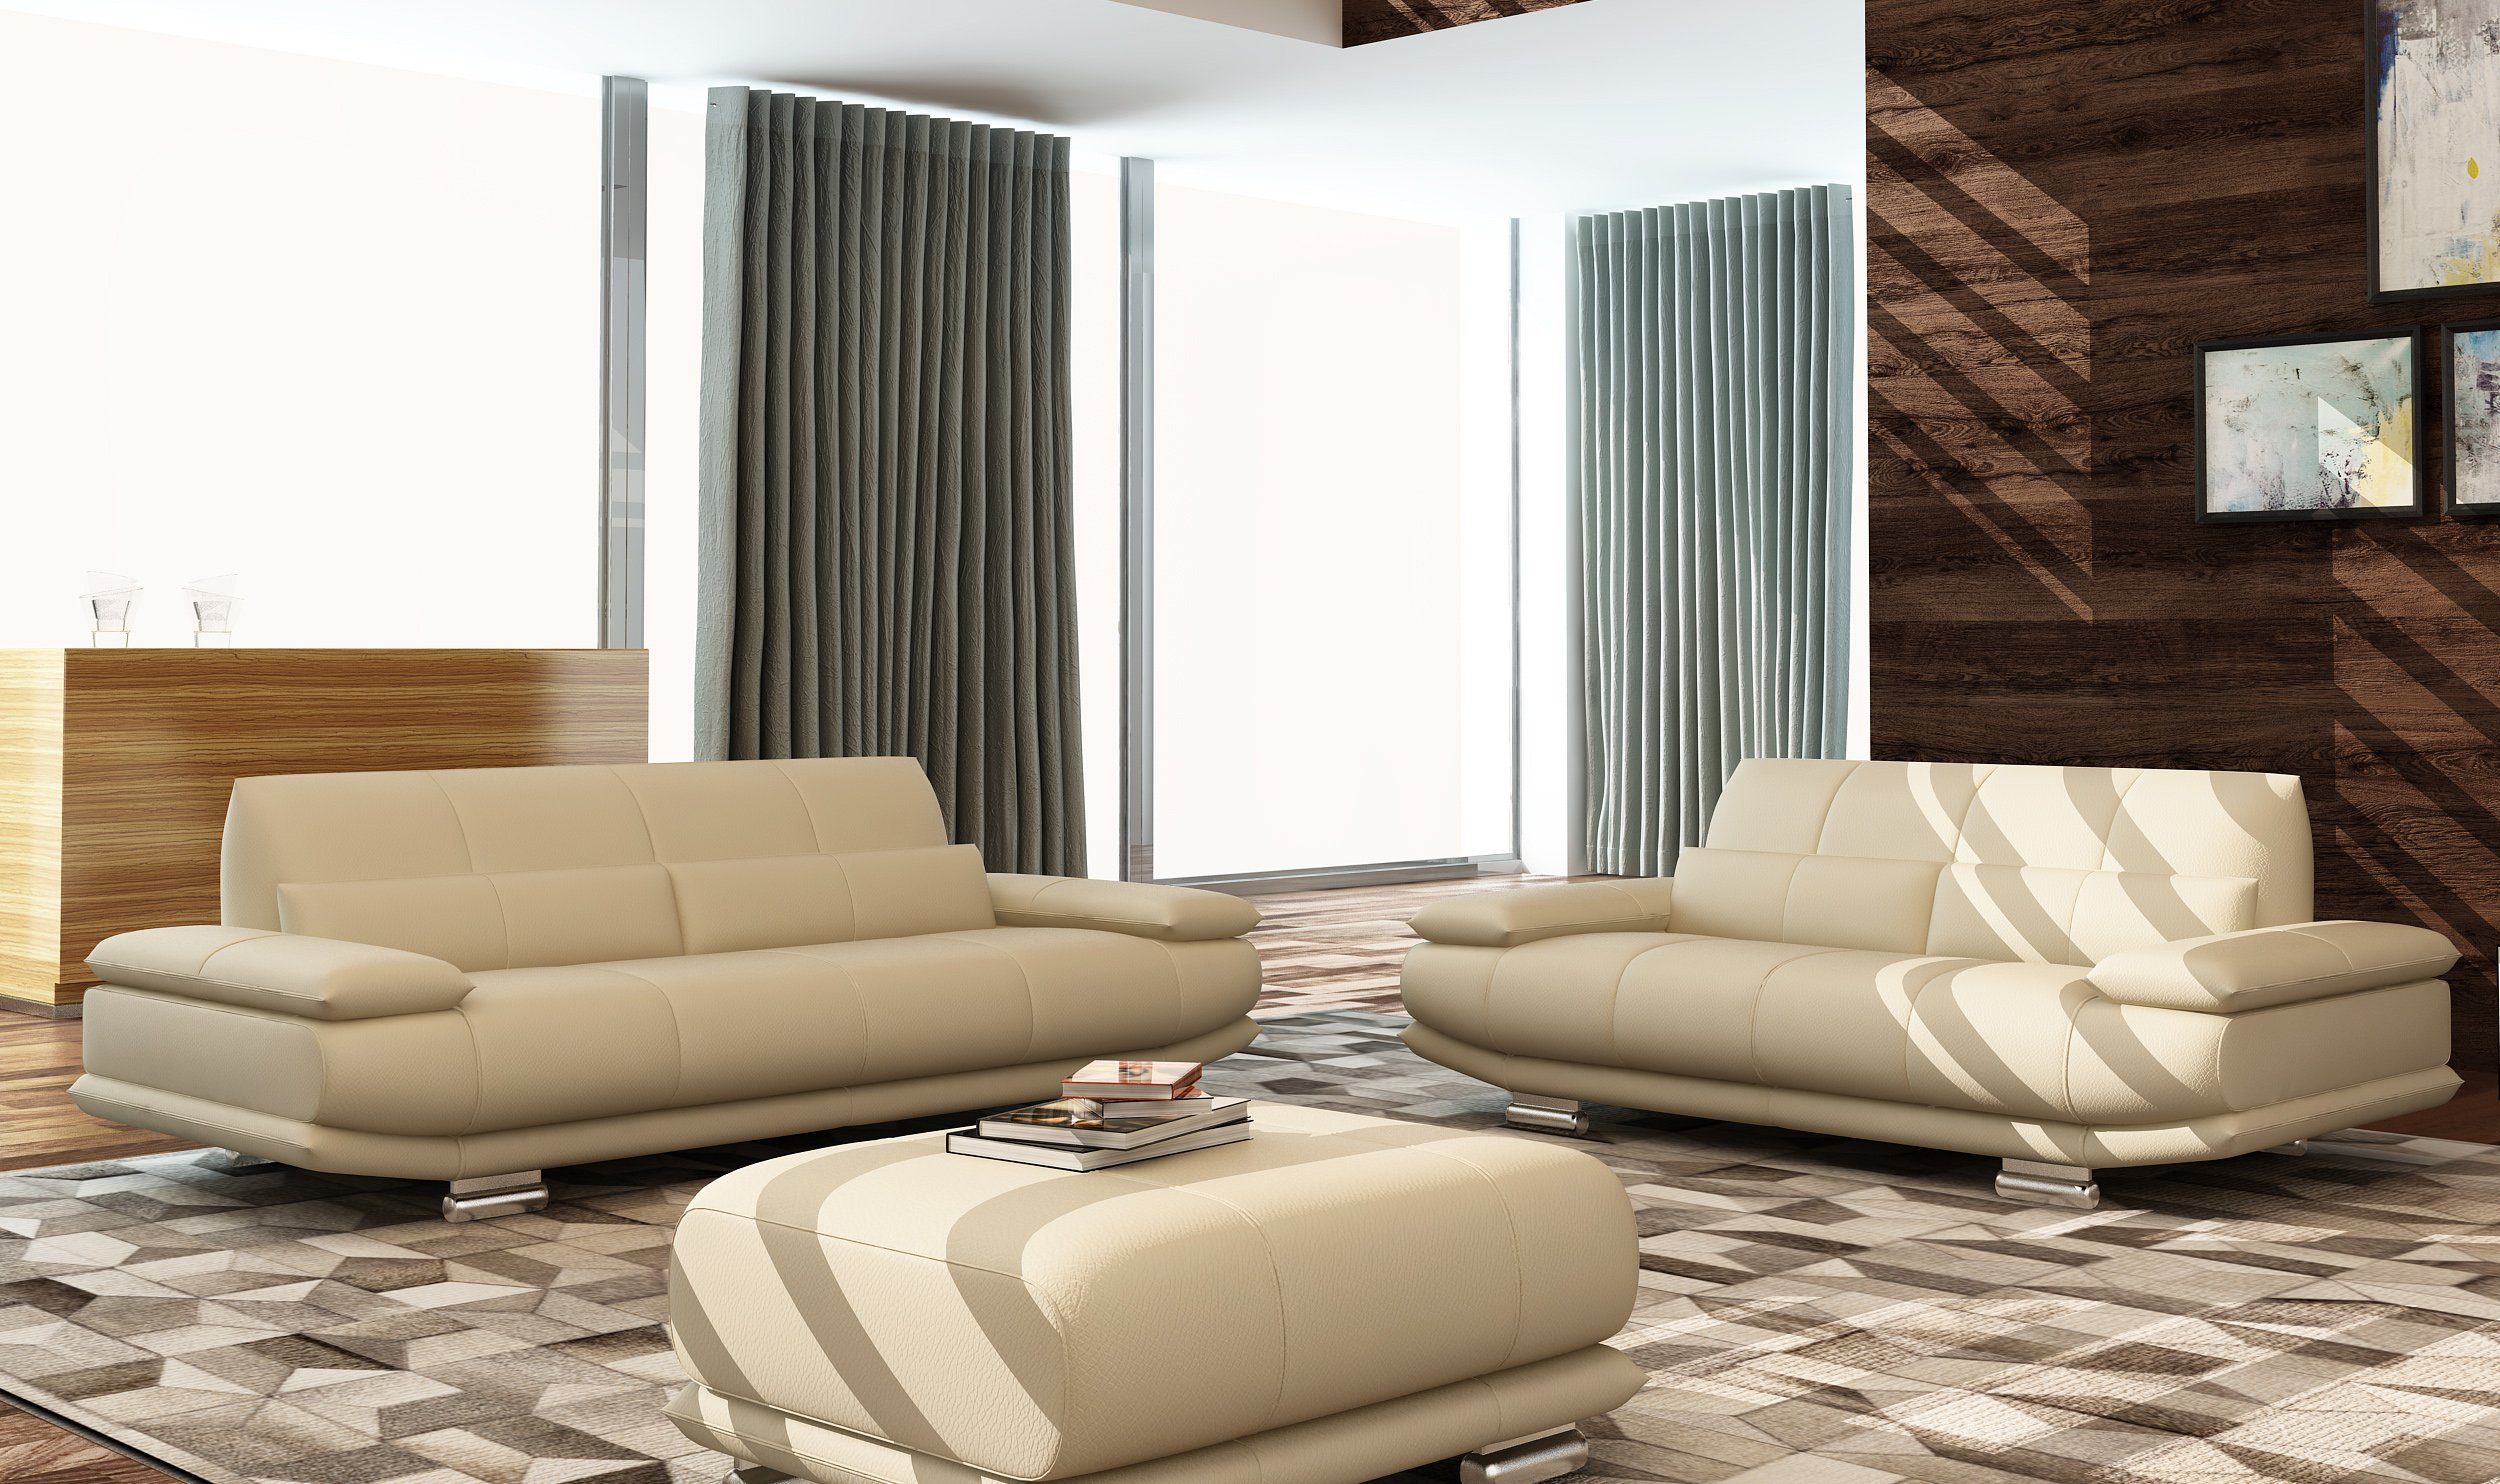 JVmoebel Sofa Beiger Couch Polster 3 Sitzer Leder Sofas Couchen Sitz Design, Made in Europe